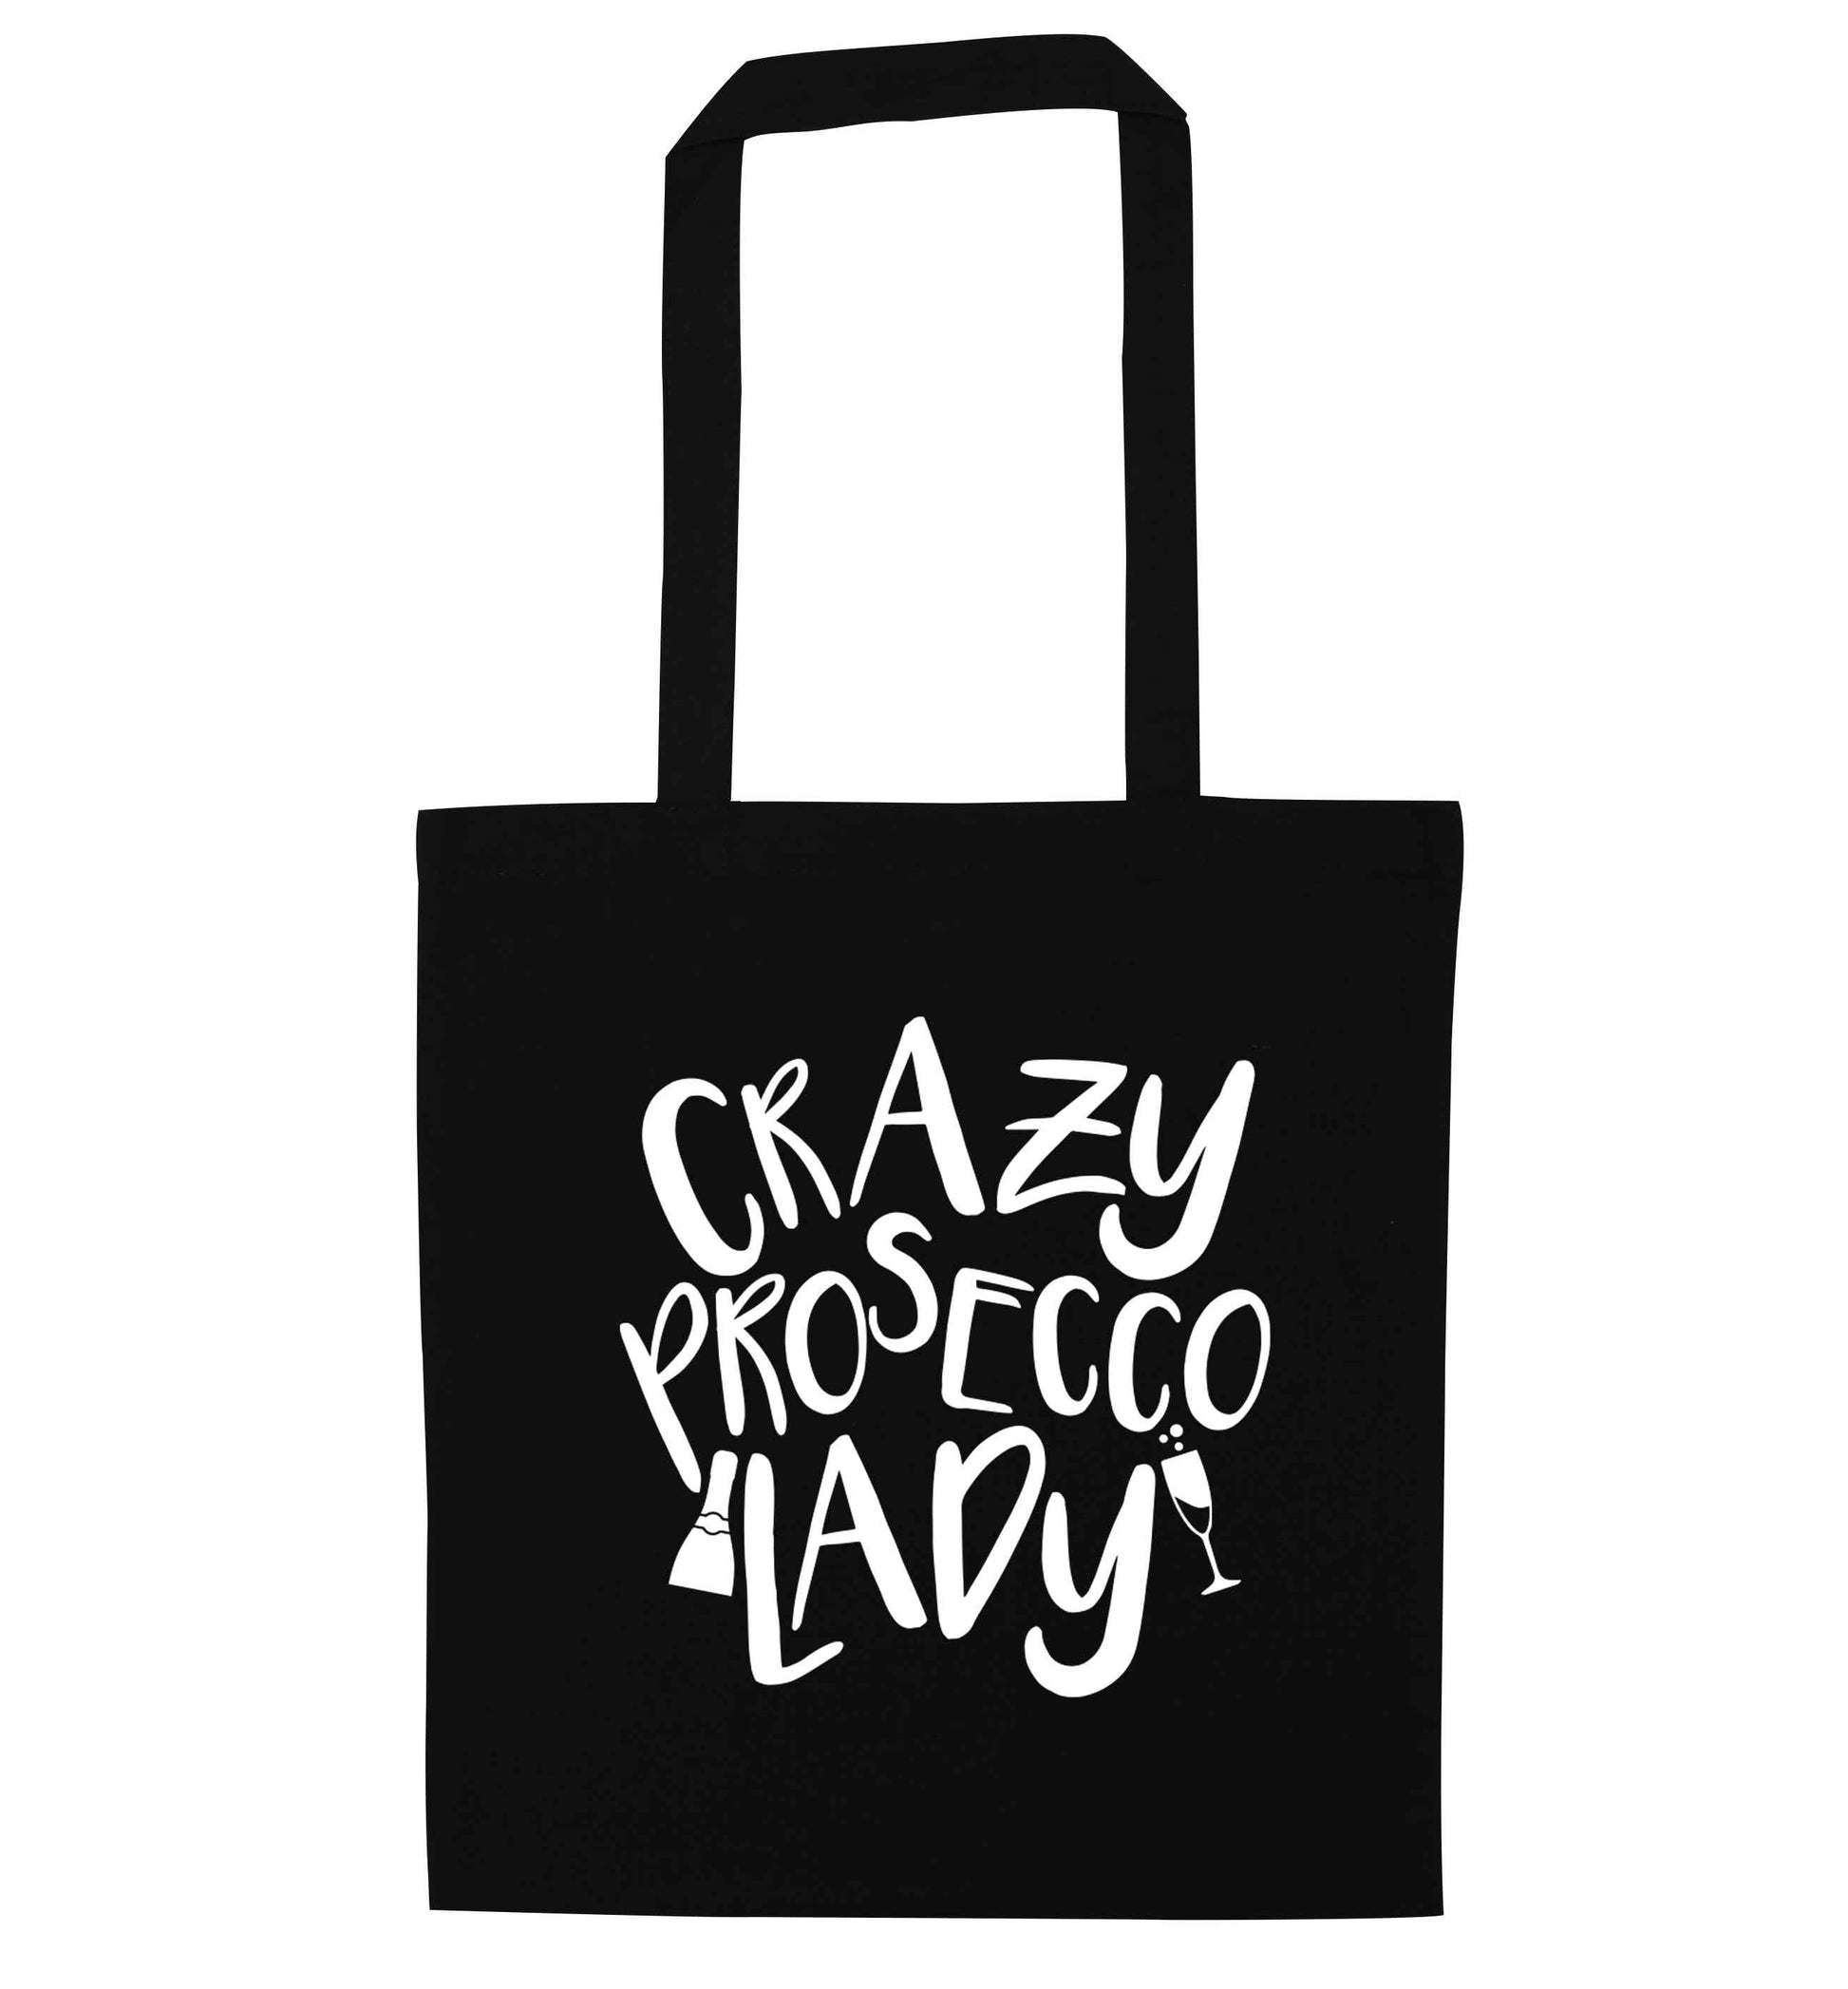 Crazy prosecco lady black tote bag